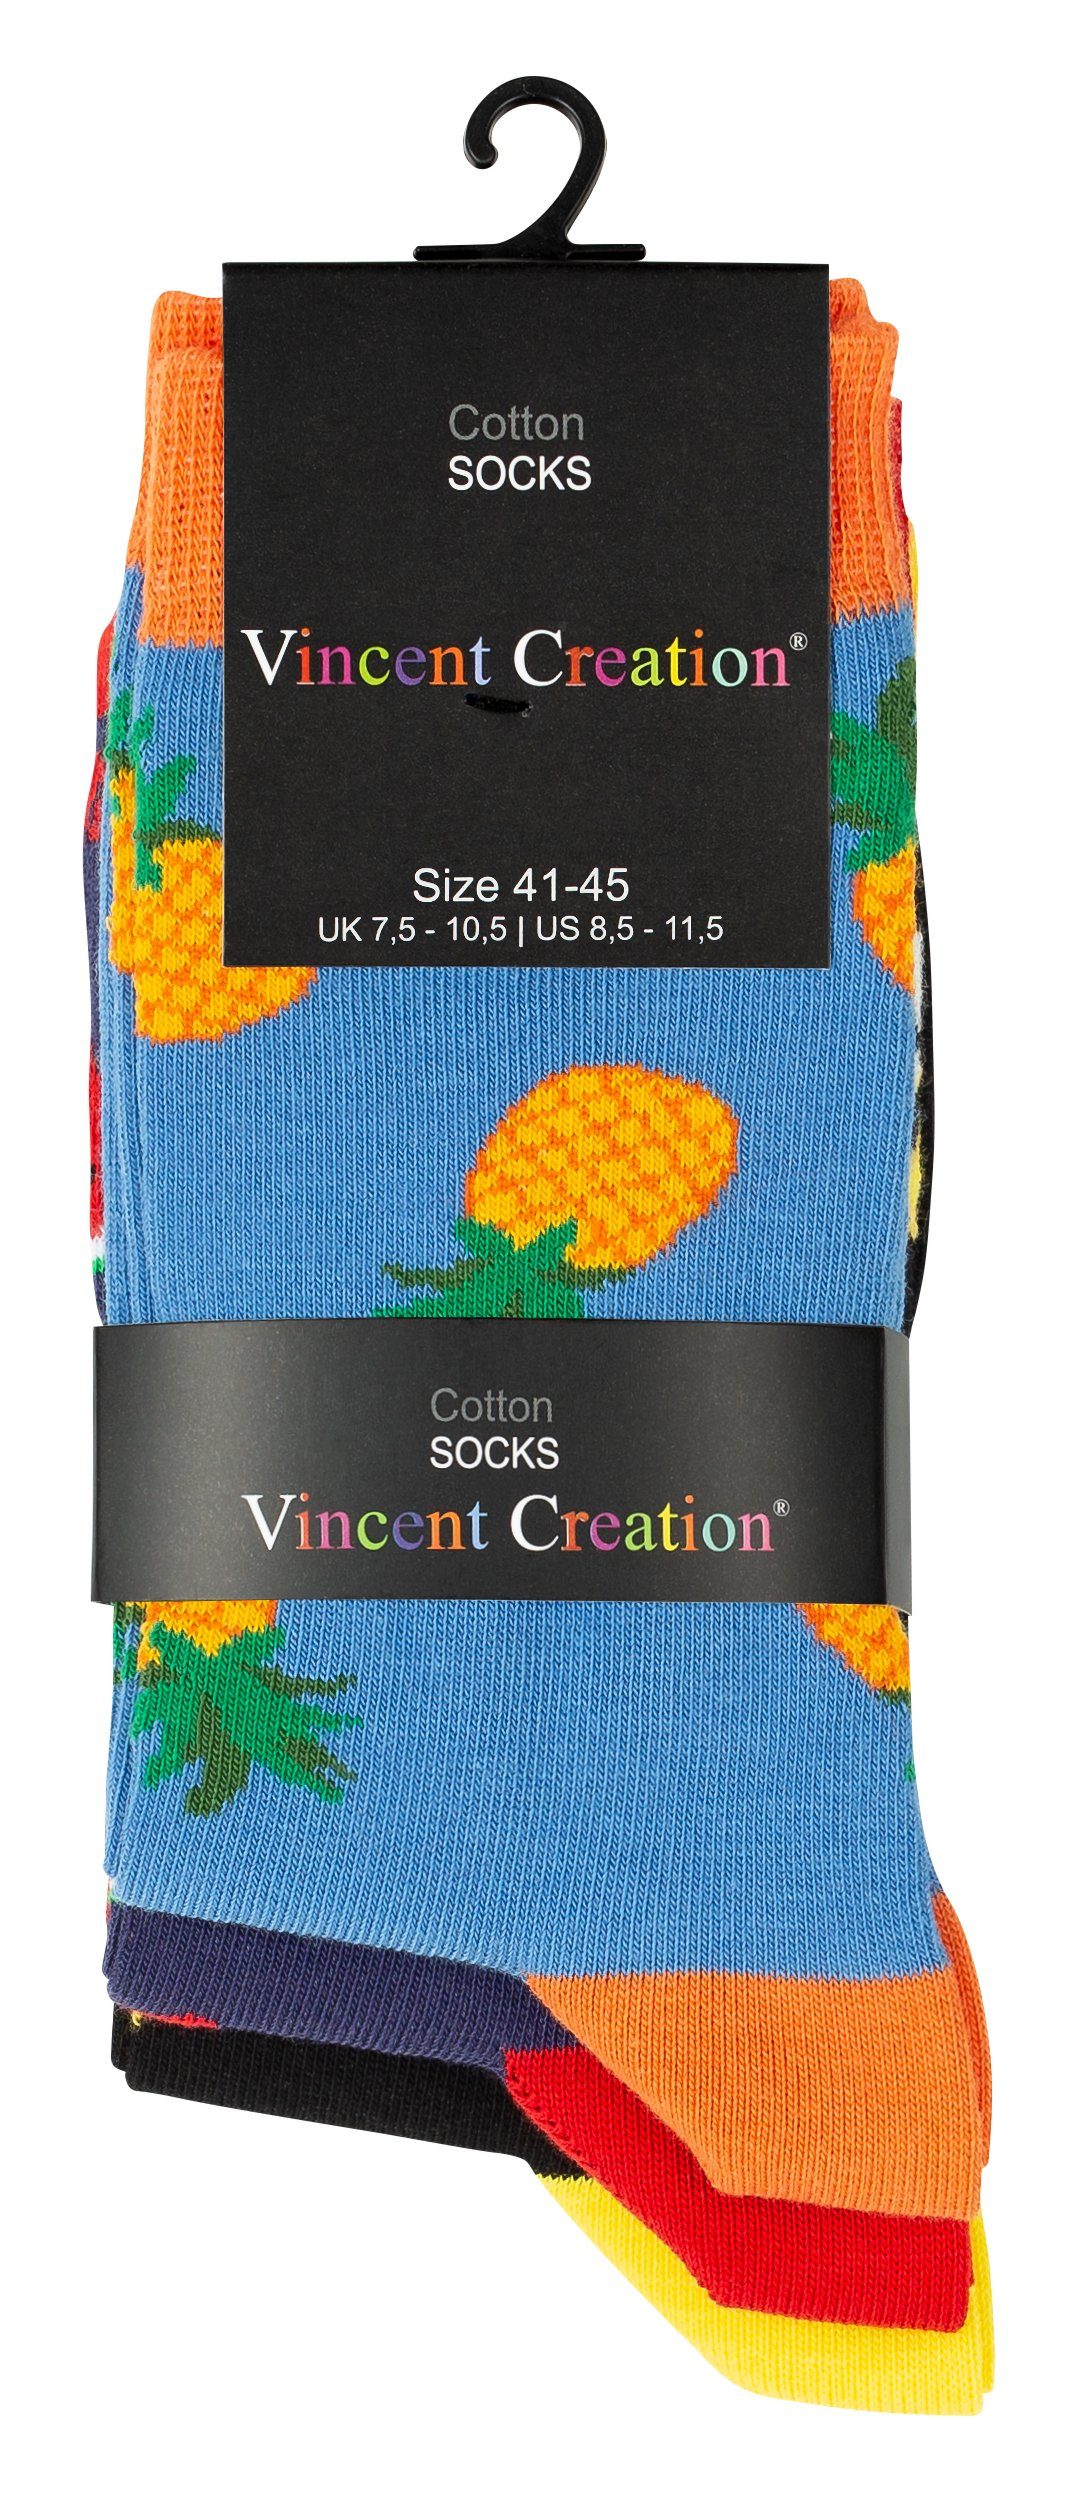 Socken angenehmer Früchte Baumwollqualität Vincent Creation® in mit Design (3-Paar)